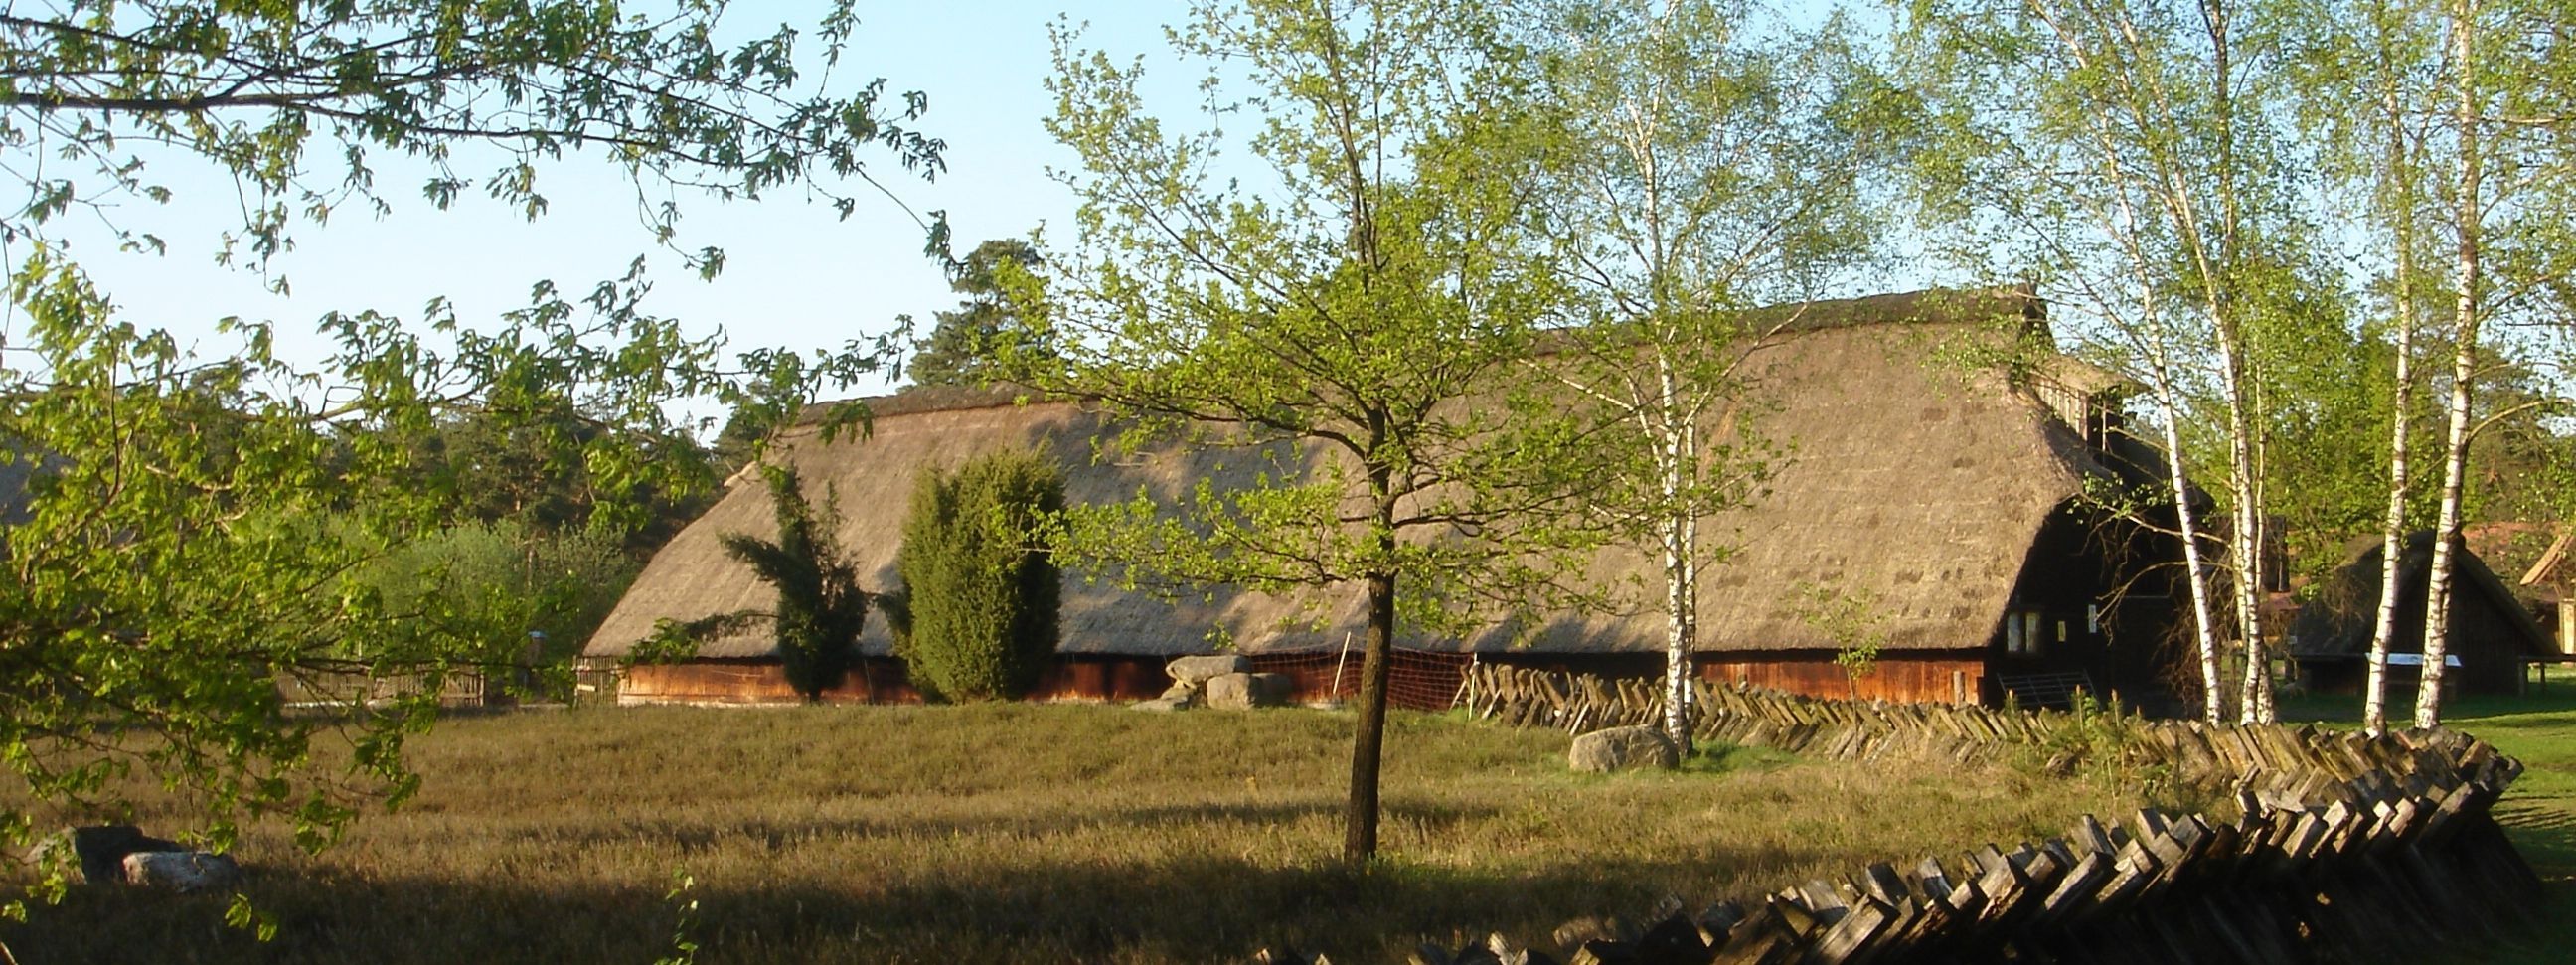 Reetgedeckter Schafstall am Schäferhof